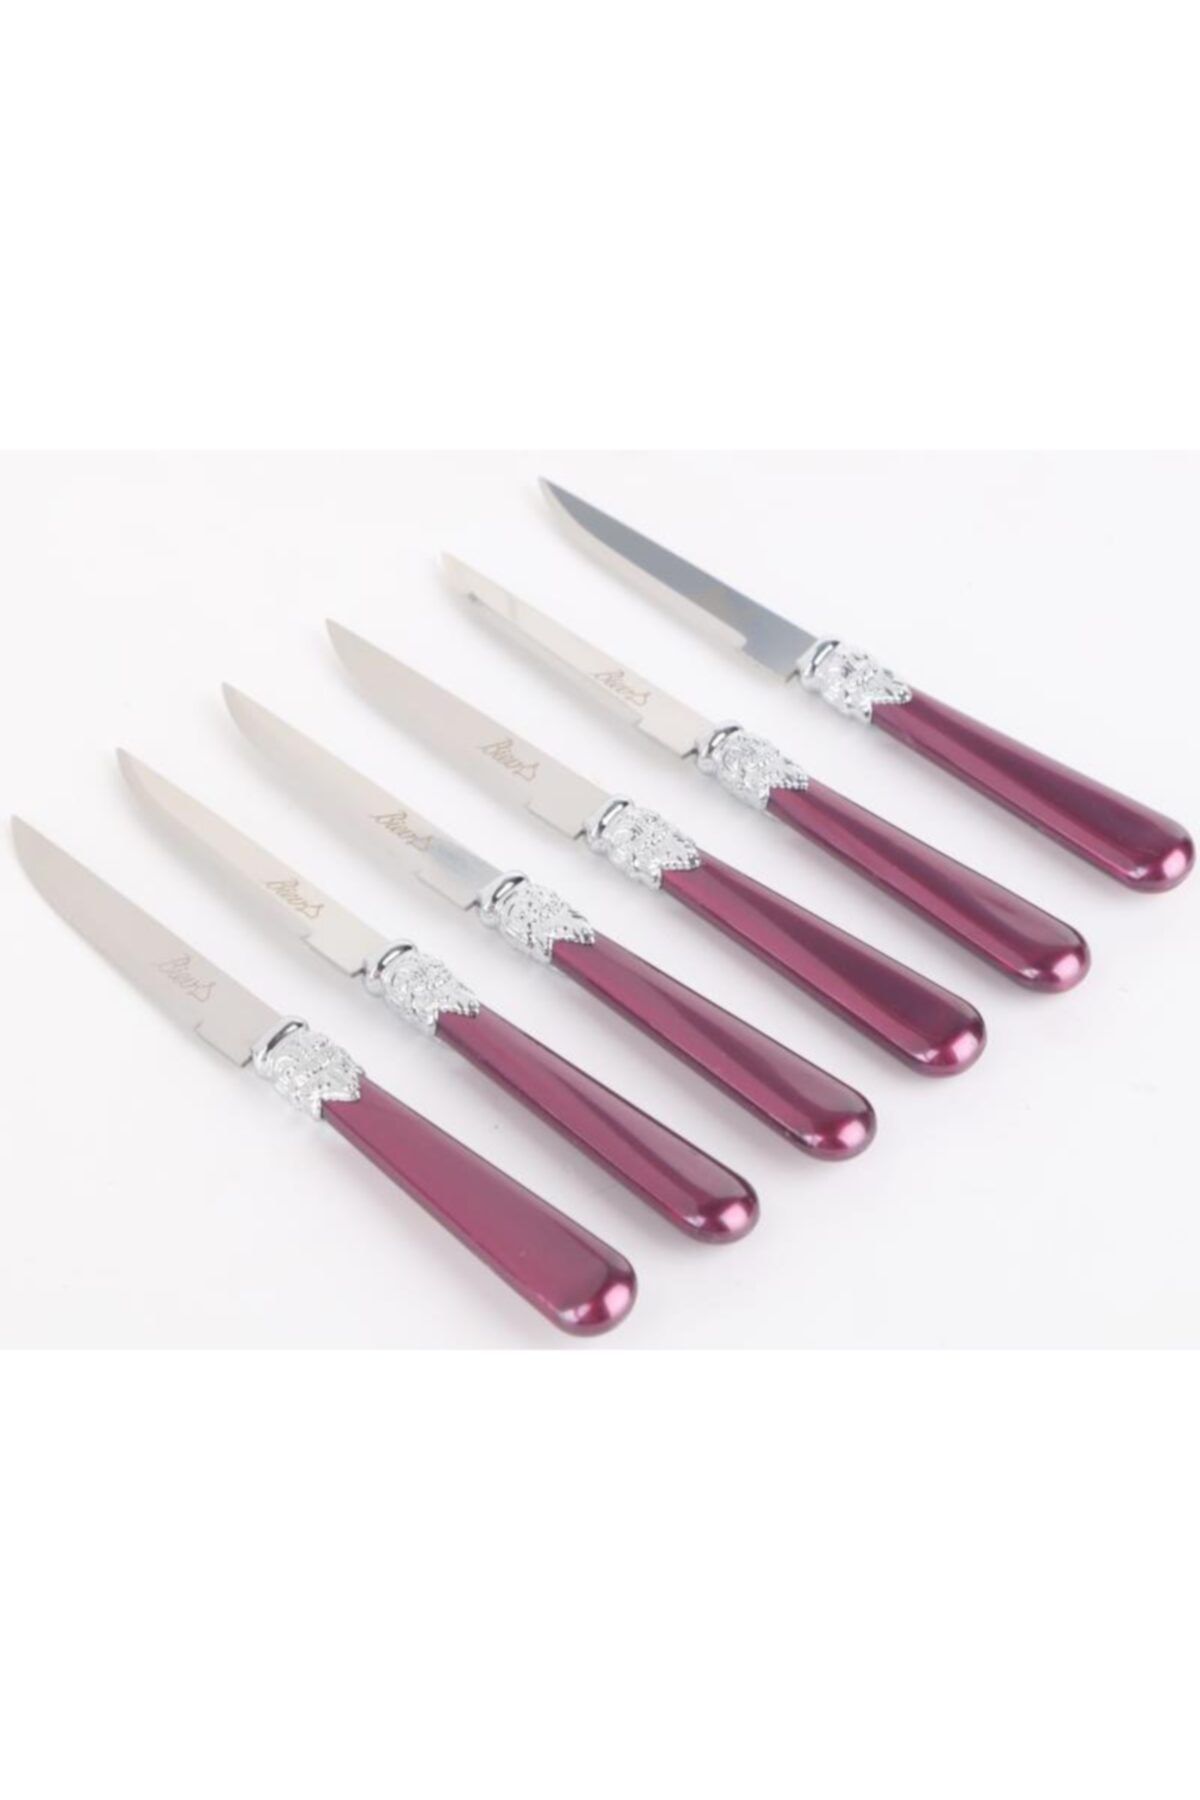 Biev Sedefli Bordo Melamin&çelik 6 Lı Tatlı Bıçağı Sgr1500 - 6